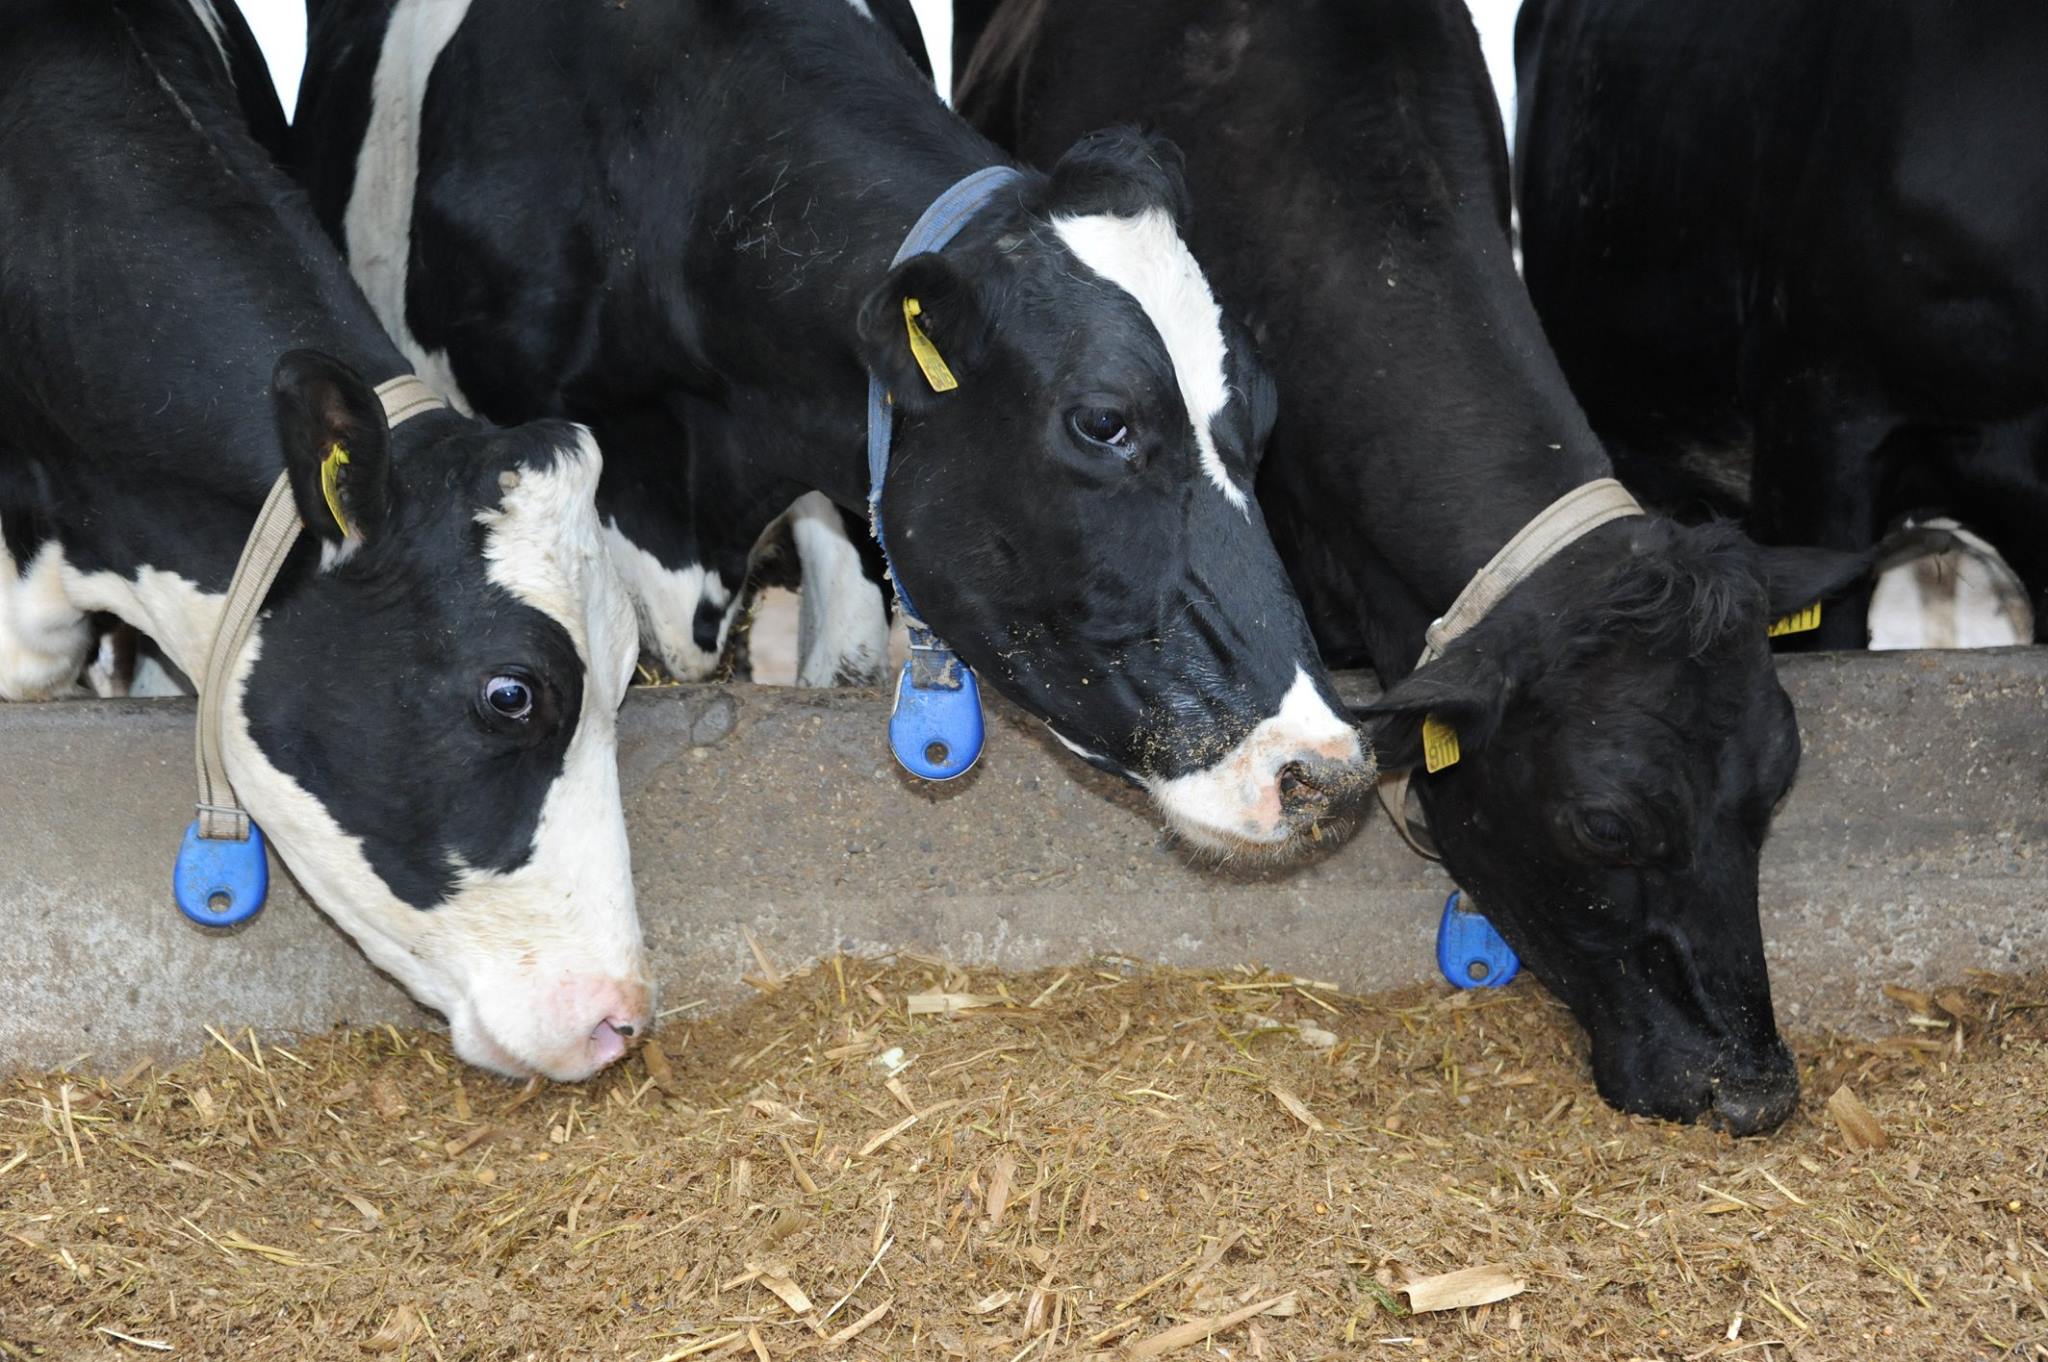 Subvenție de 73 euro pentru crescătorii de vaci de lapte. Cine primește ajutorul